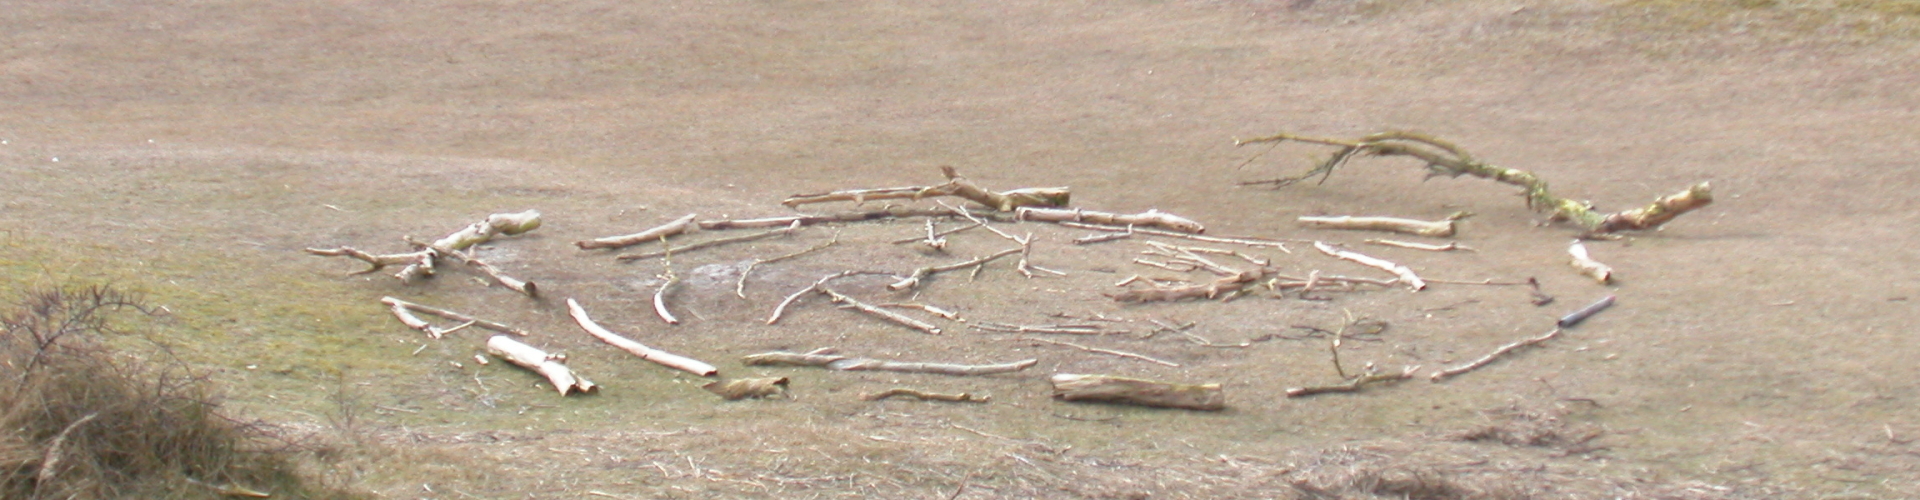 een cirkel gemaakt van takken als een slakkenhuis neergelegd midden in de duinen